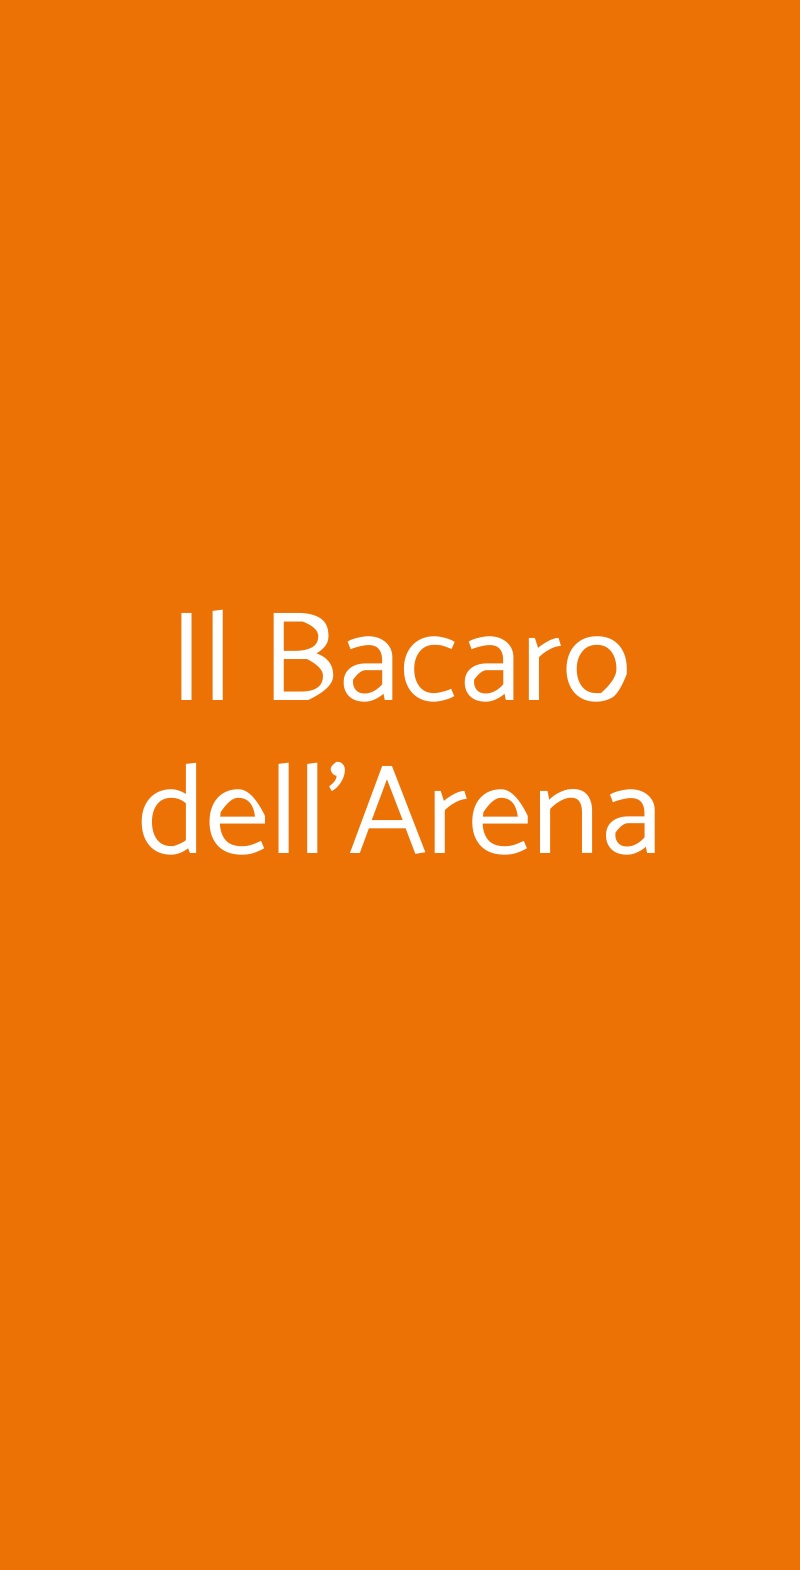 Il Bacaro dell'Arena Verona menù 1 pagina